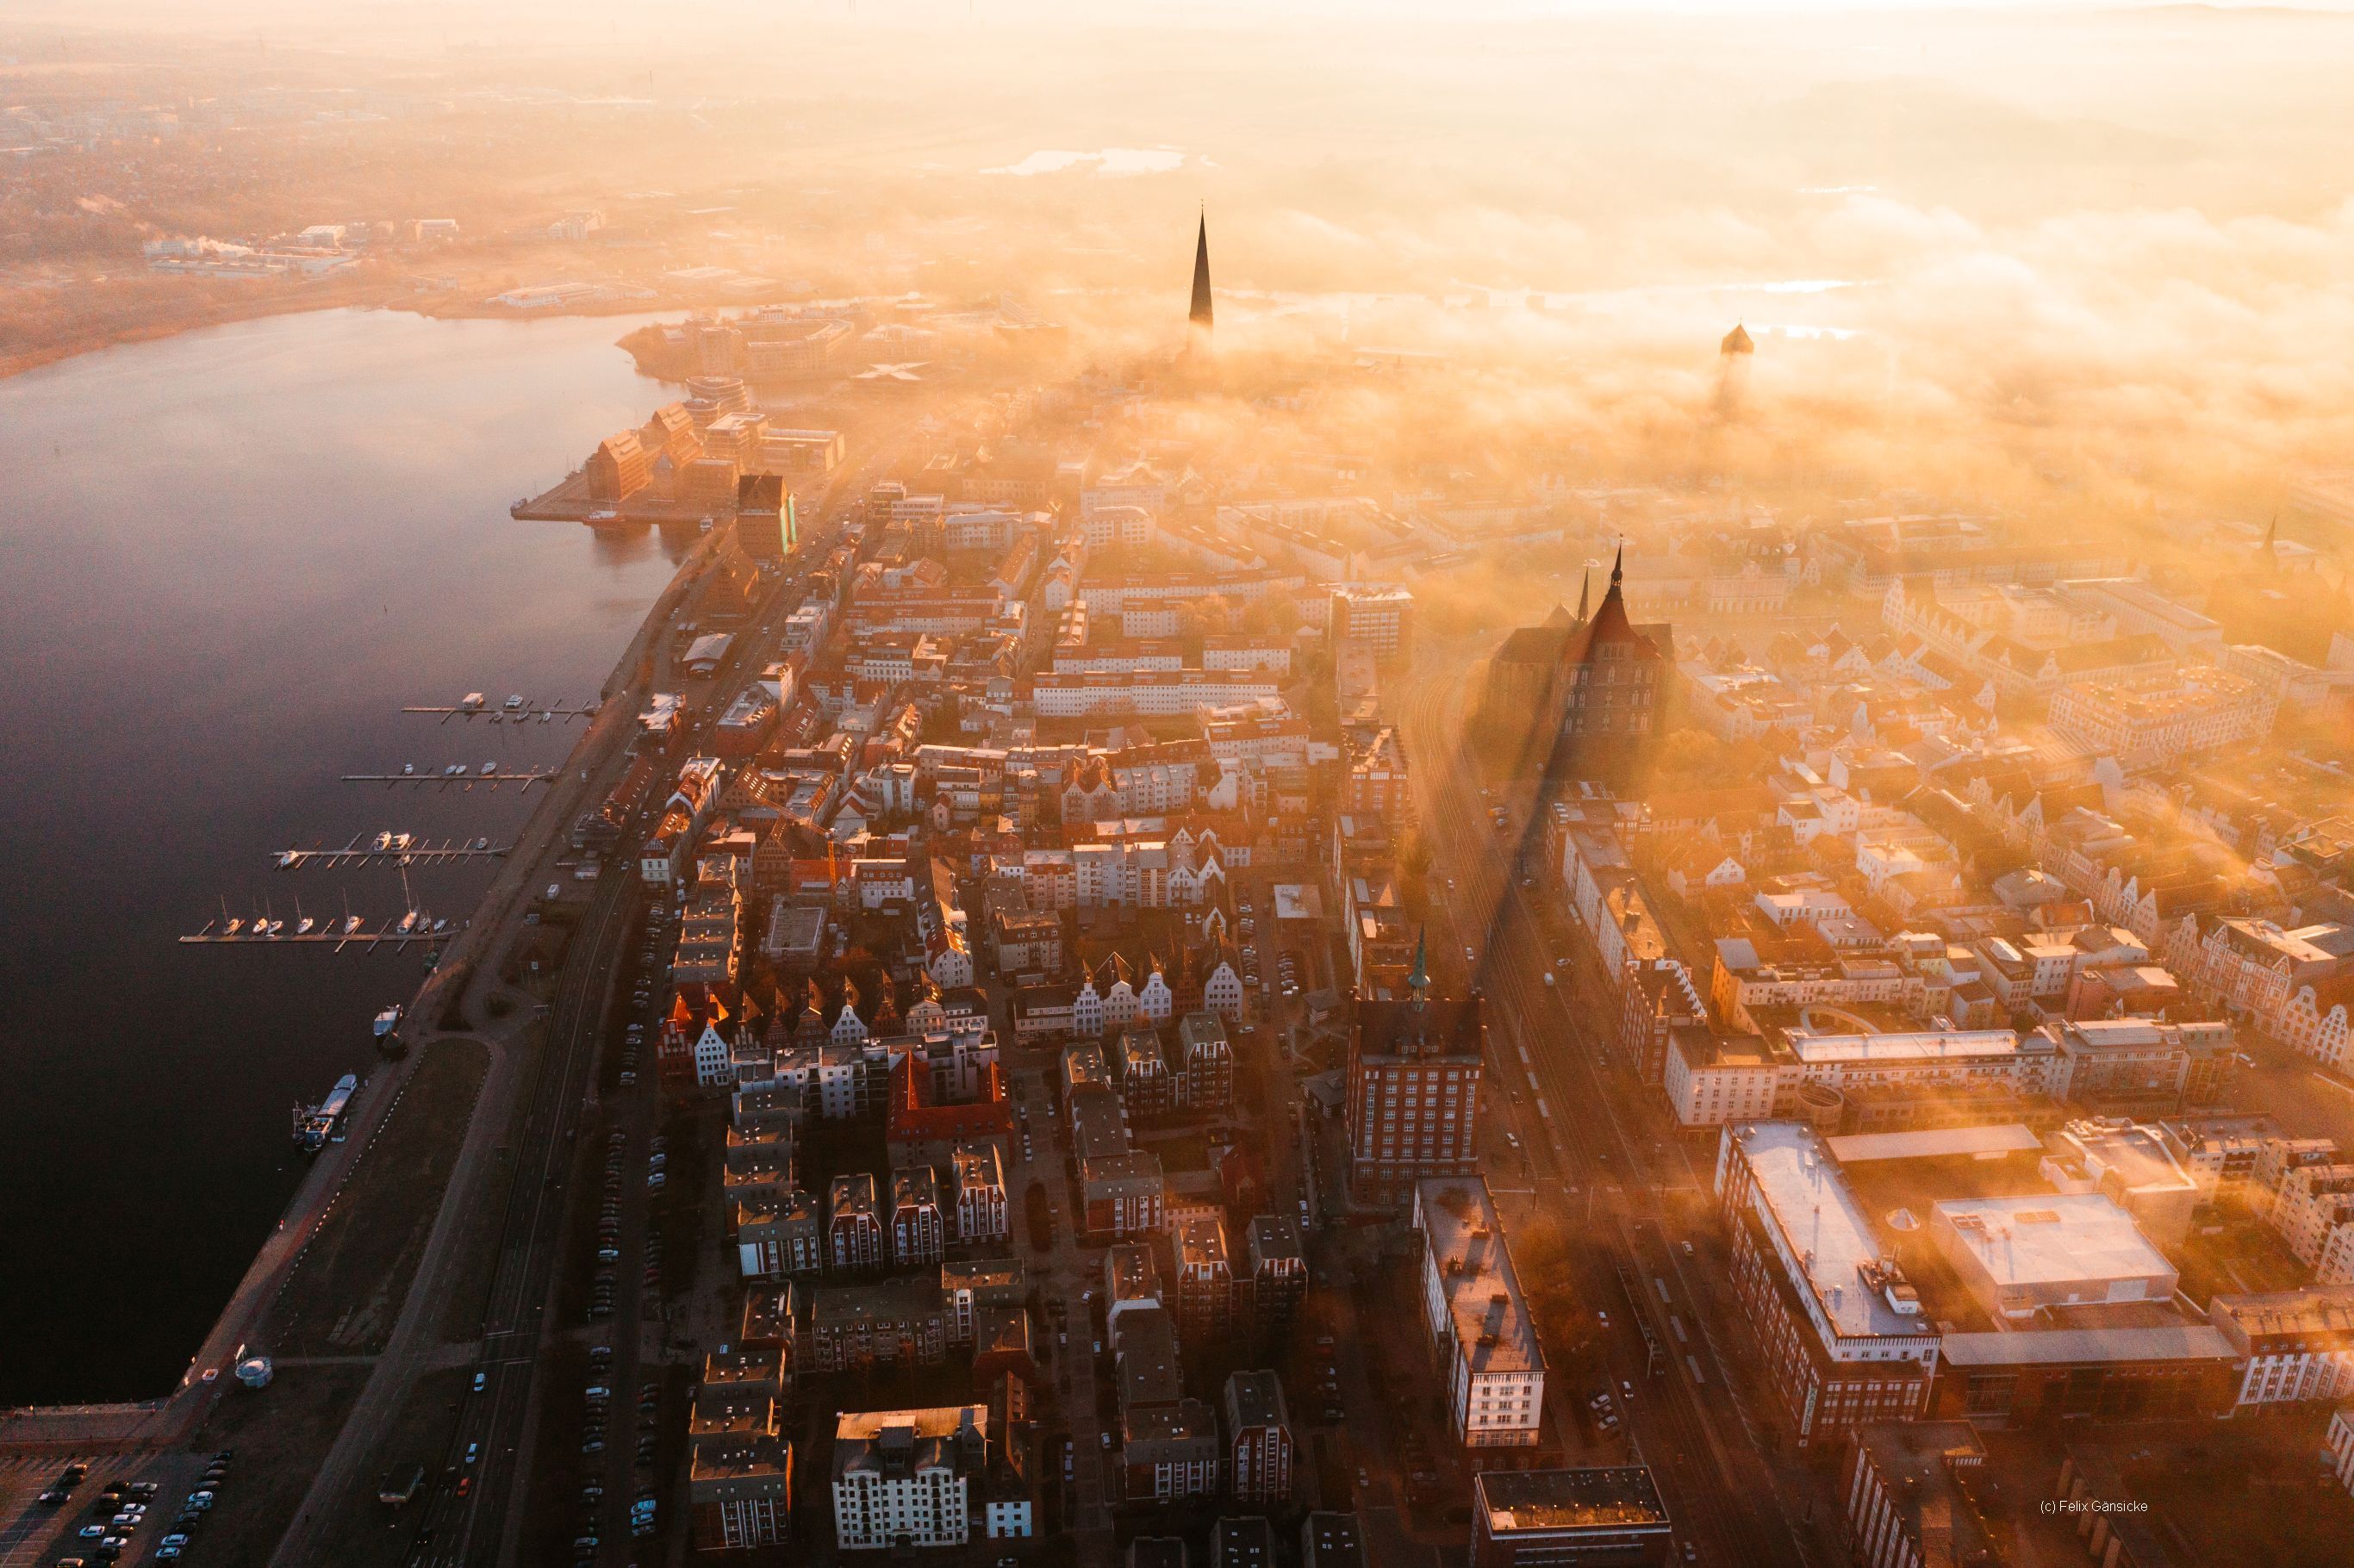 Atmosphärisches Luftbild Rostocks bei Sonnenuntergang